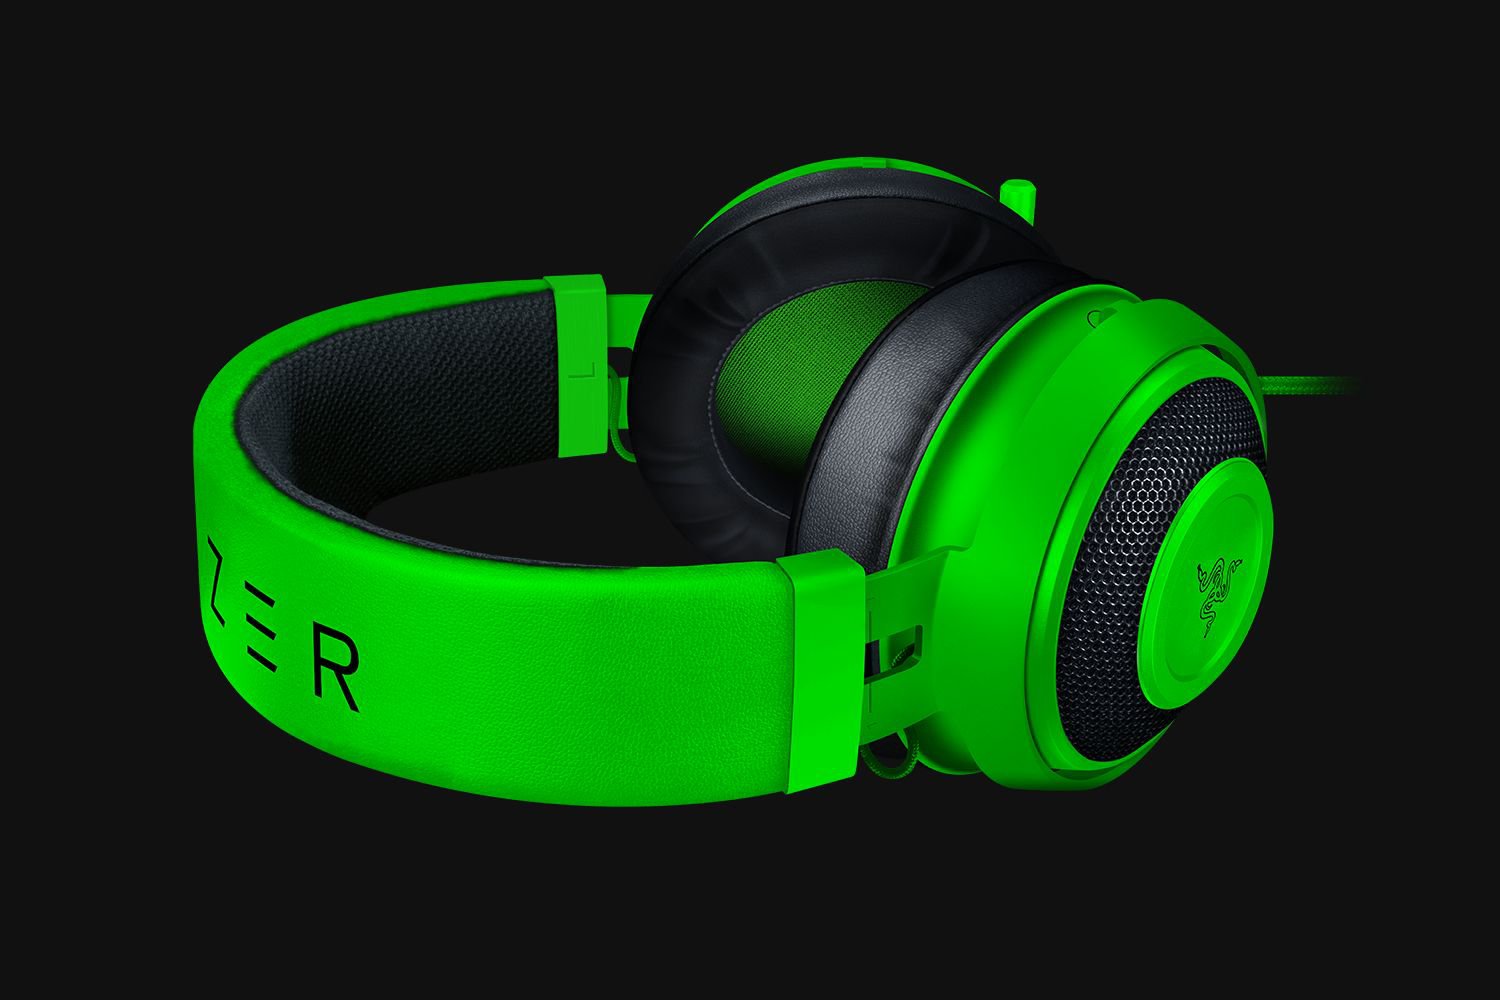 Razer Kraken - Green Multi-Platform Wired Gaming Headset | RZ04-02830200-R3M1 - Dragon Master For Electronics